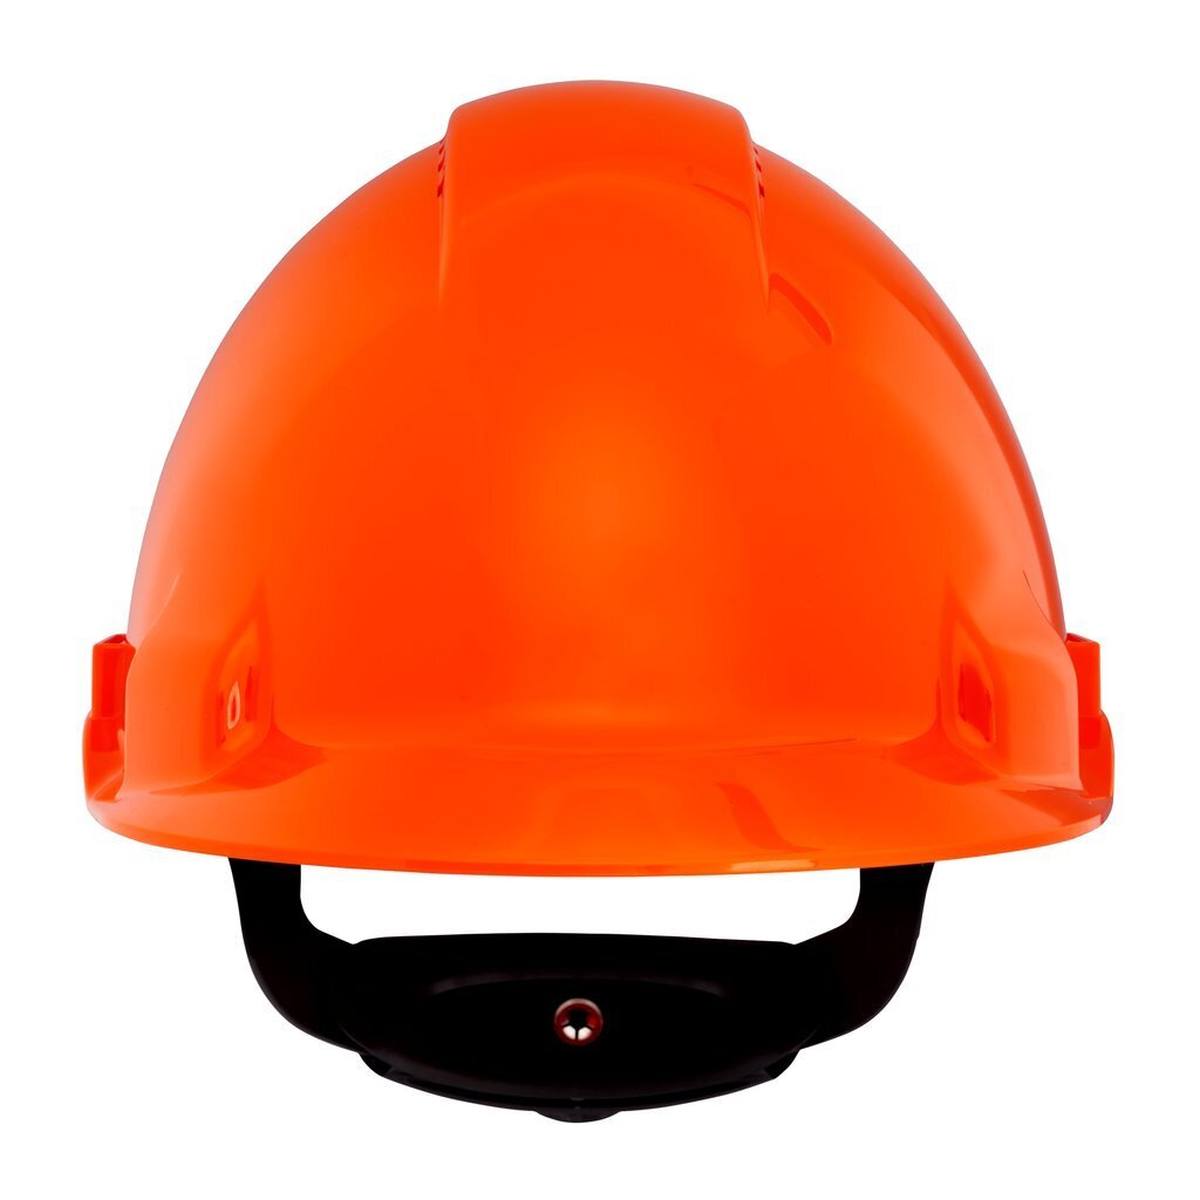 3M Casco de seguridad G3000 G30NUO de color naranja, ventilado, con uvicator, trinquete y correa de soldadura de plástico